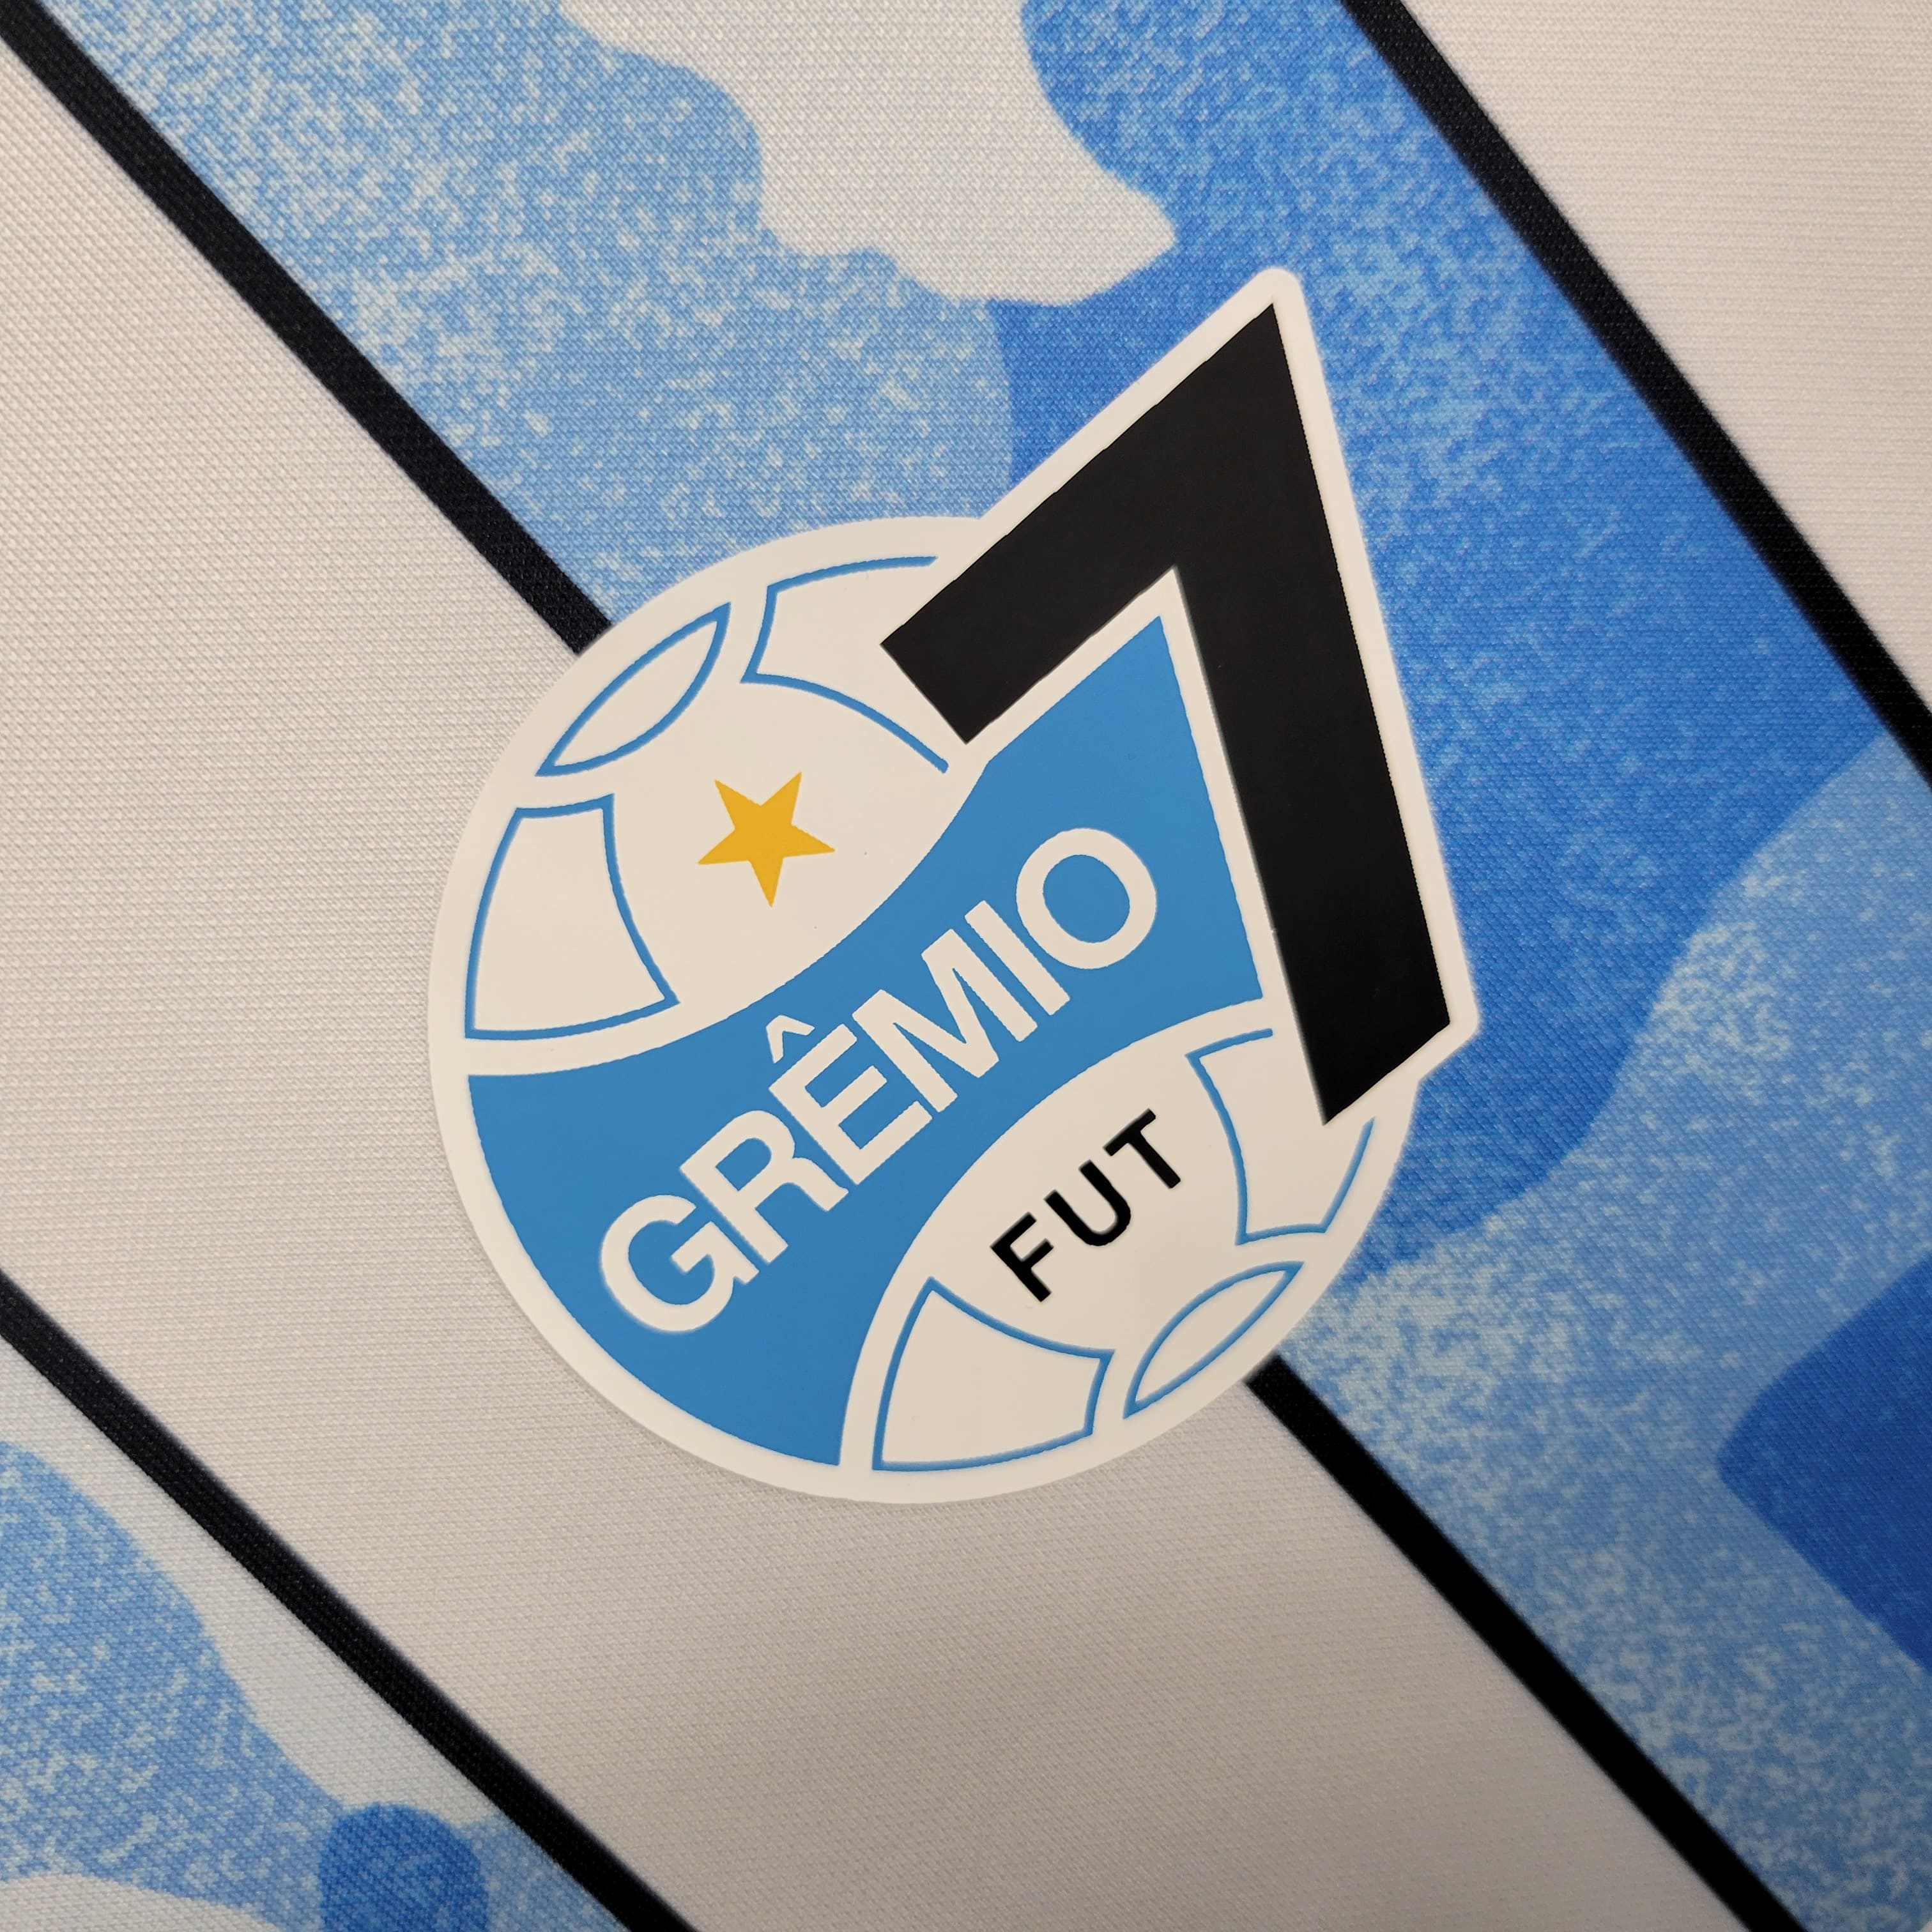 Camisa Grêmio Fut 7 - 23/24 - ClubsStar Imports